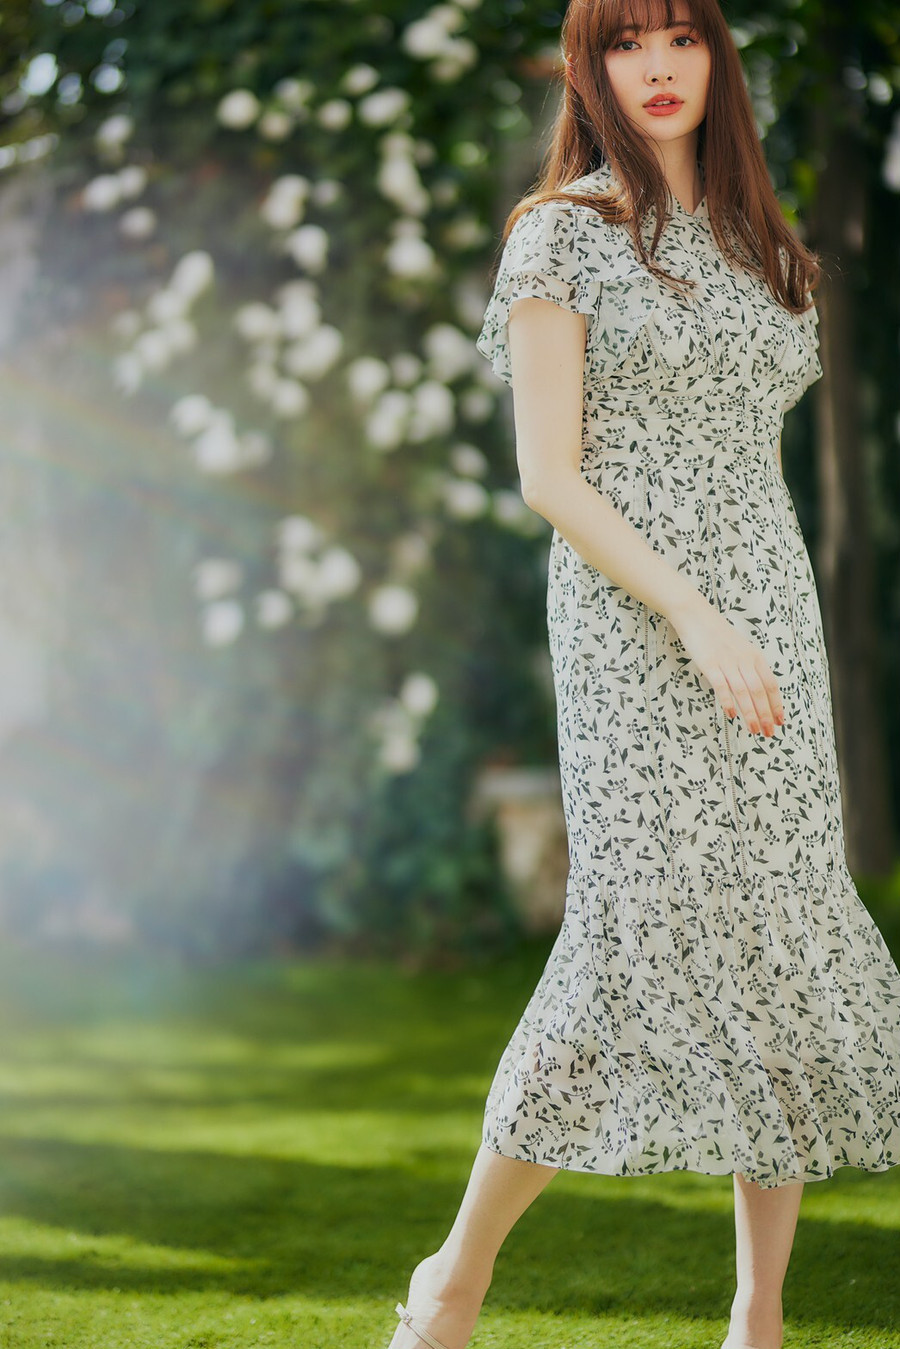 Muguet-printed Romantic Dress